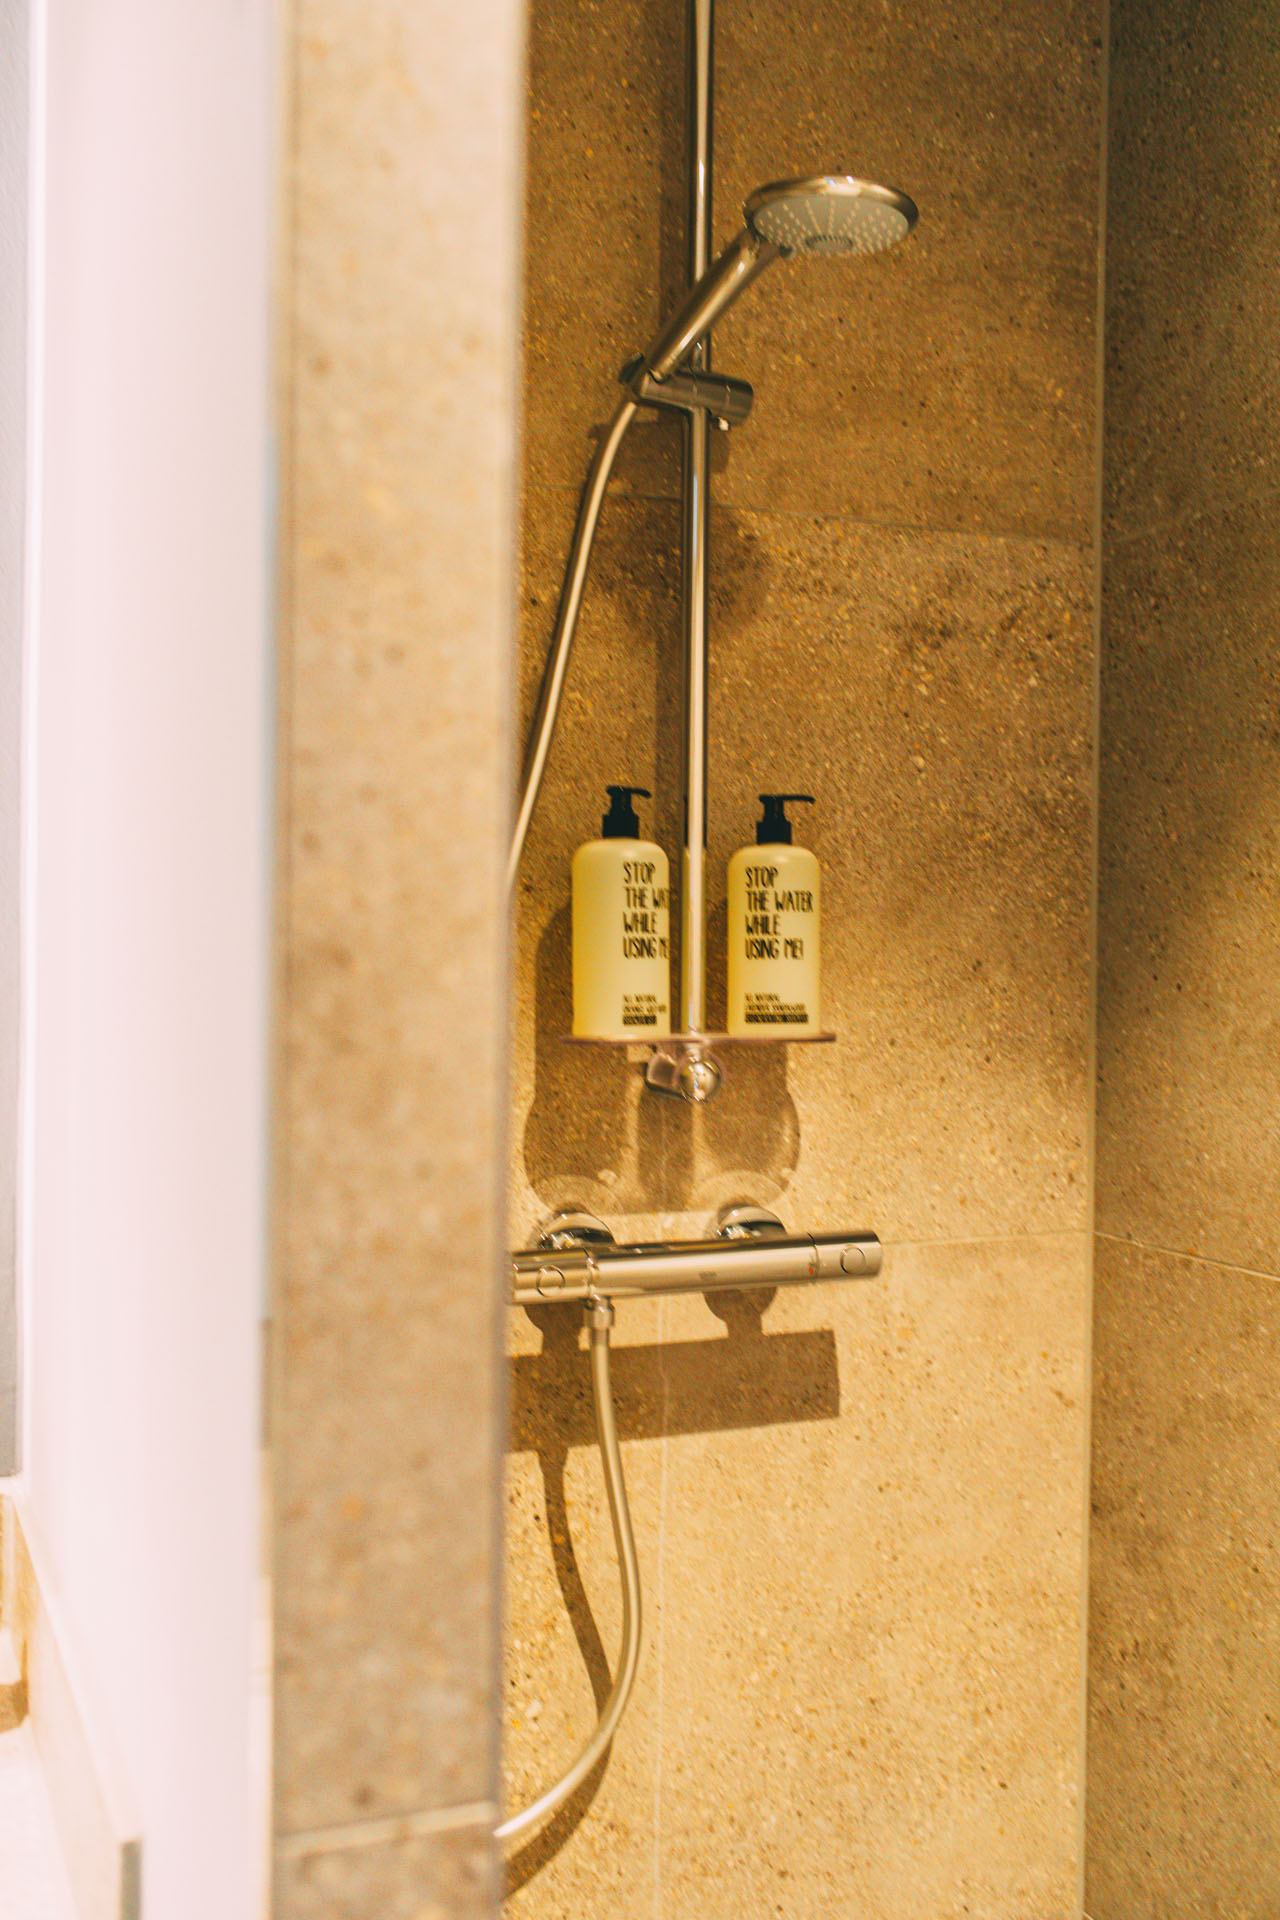 Die Dusche in einem der Hotelzimmer mit Duschgel und Shampoo der Marke Stop the water while using me